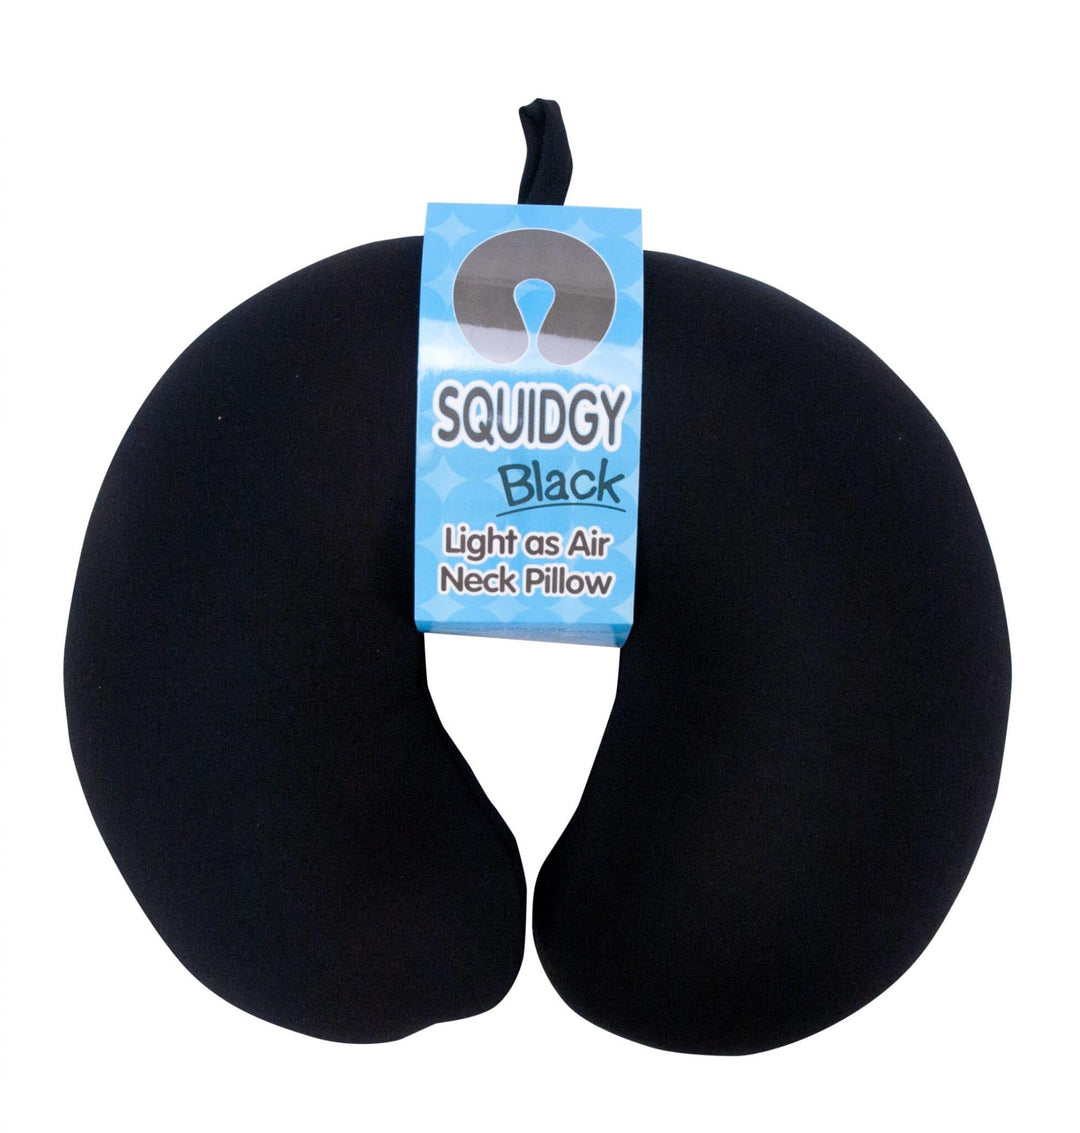 Black Squidgy neck pillow